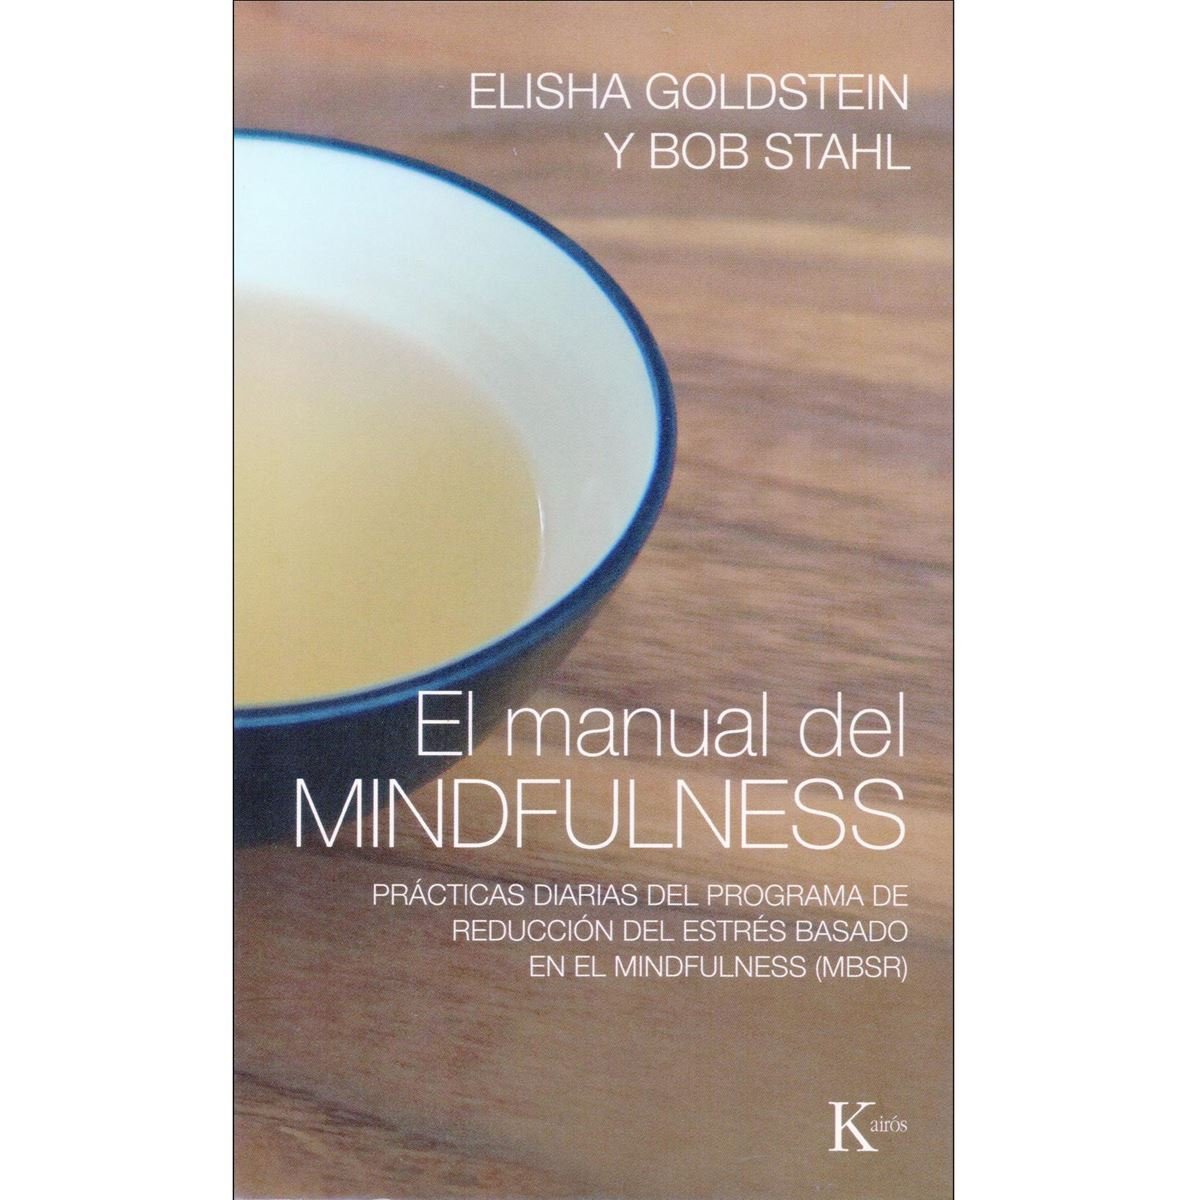 El manual del Mindfulness